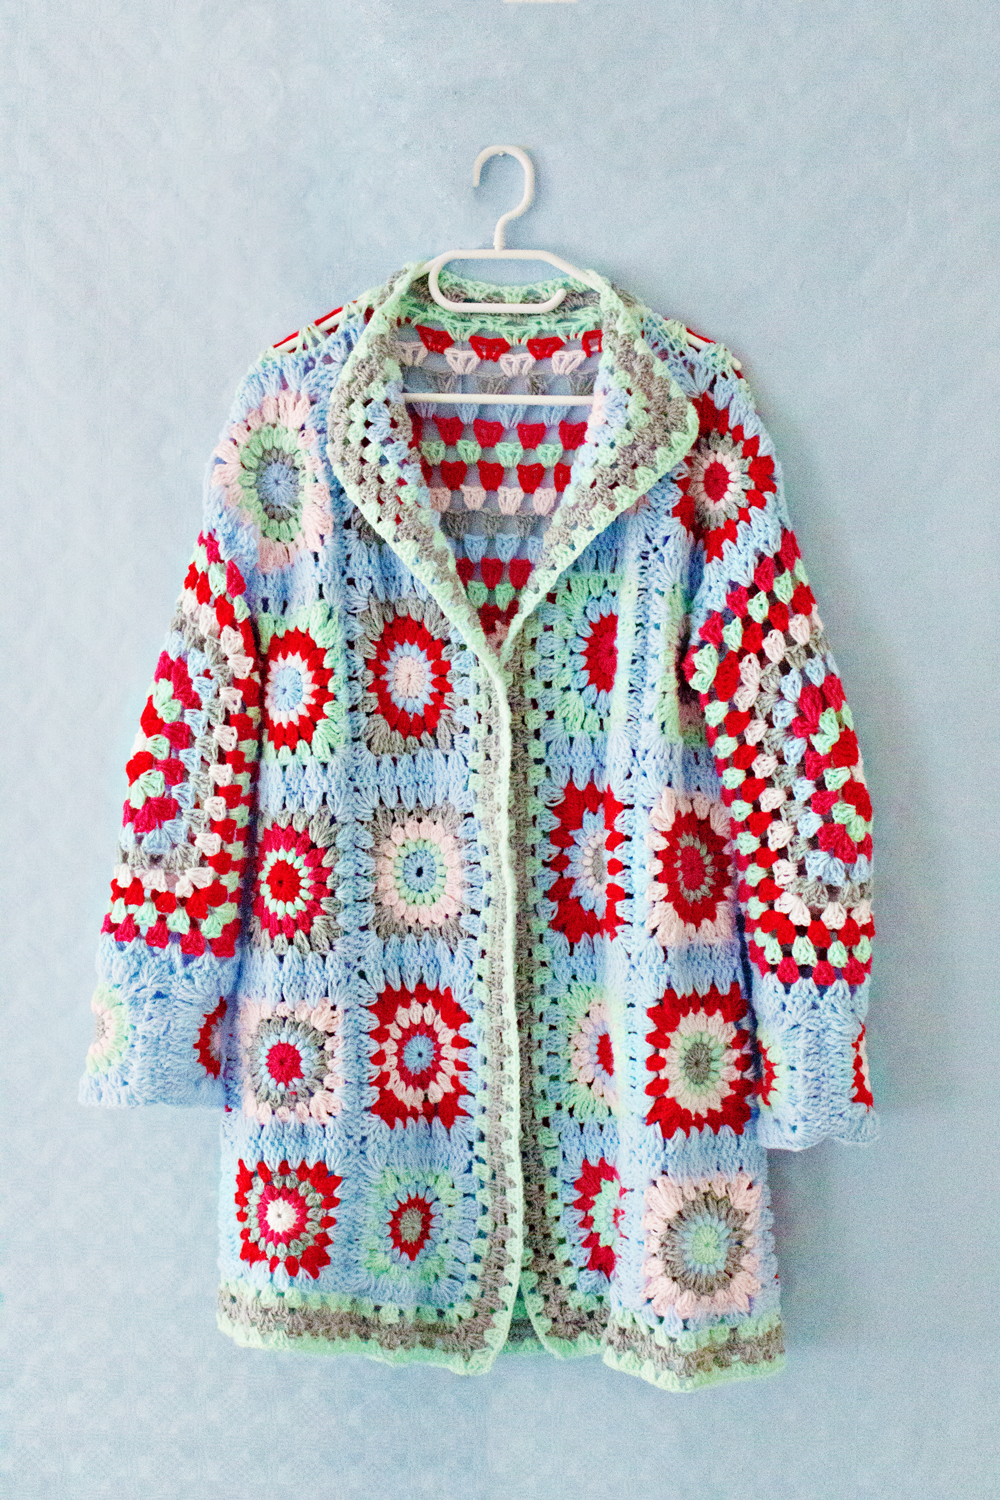 Granny Square Top Crochet Pattern – Handy Little Me Shop